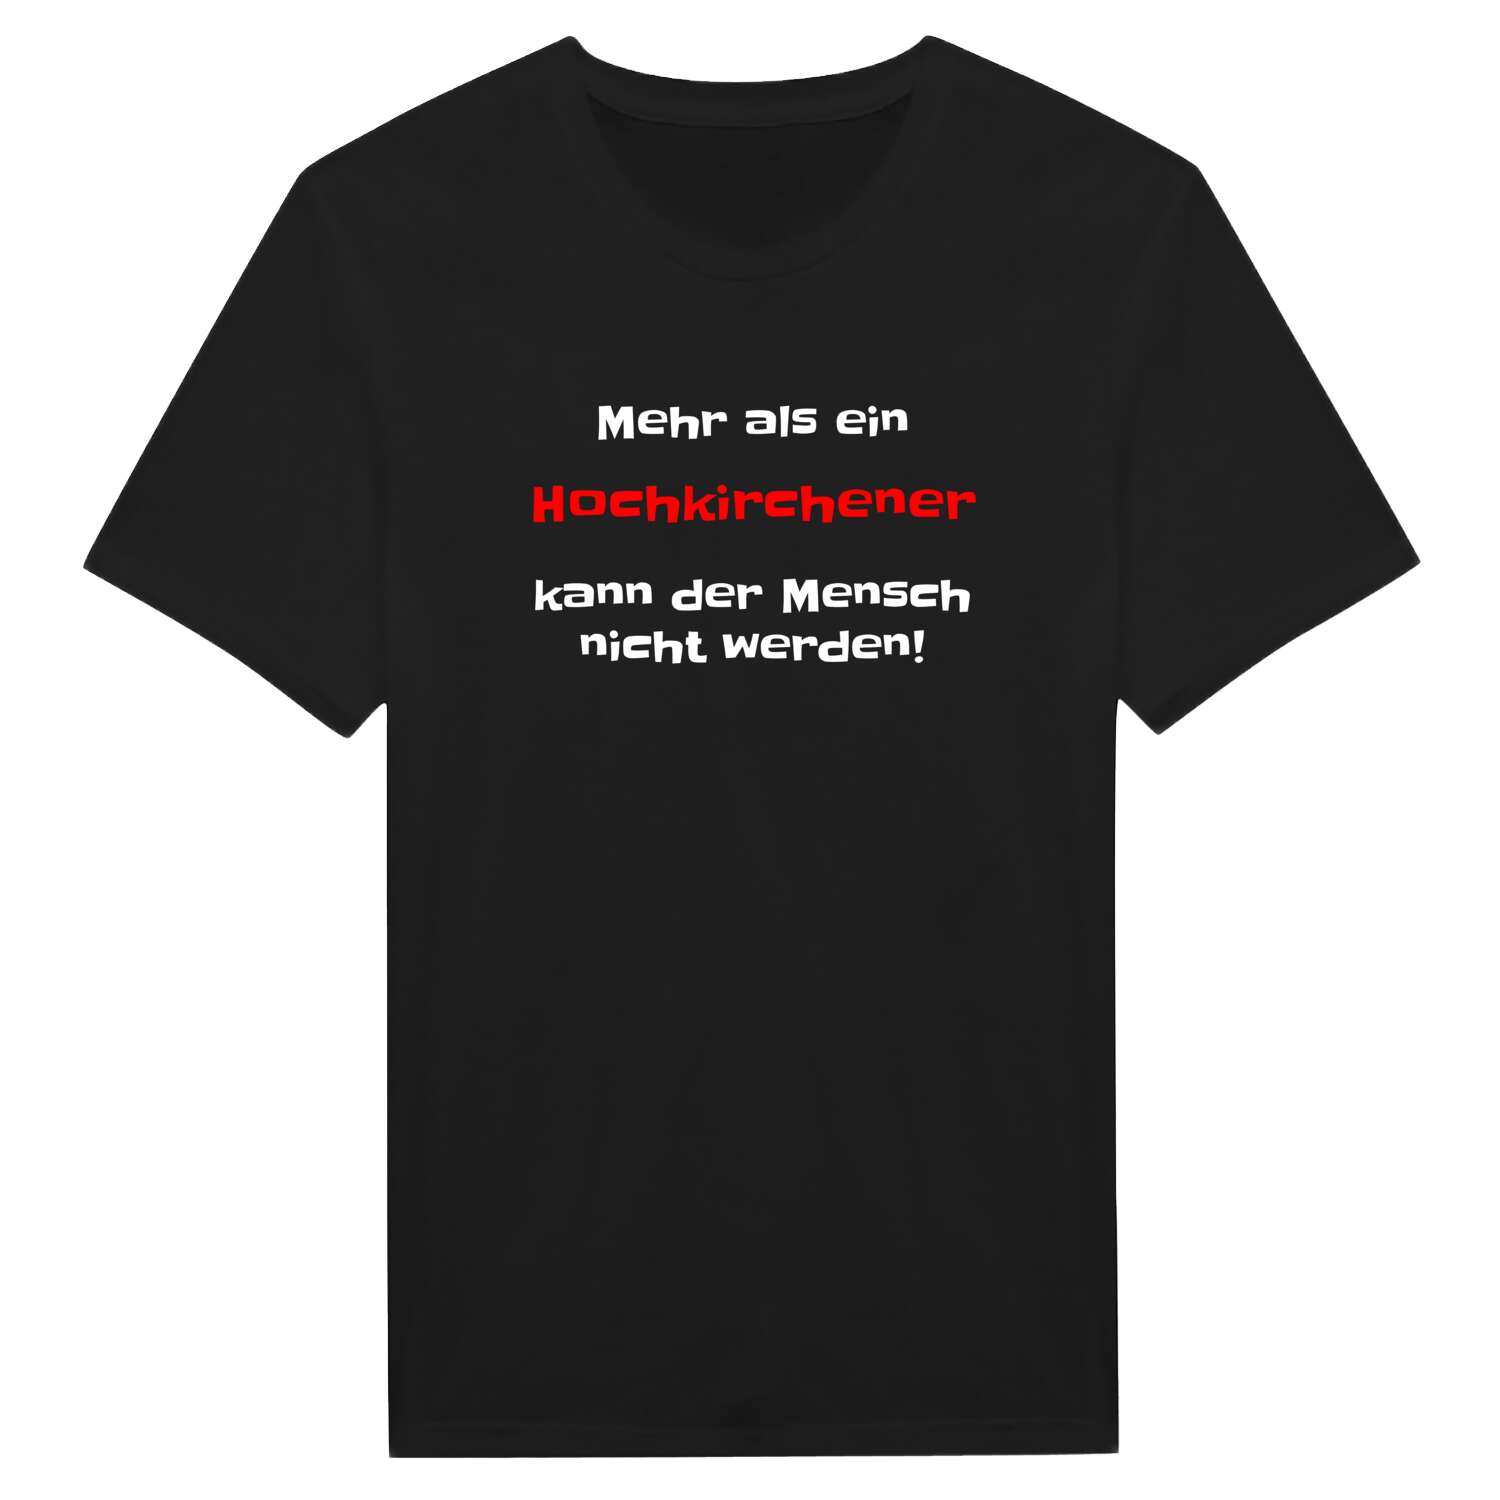 Hochkirchen T-Shirt »Mehr als ein«